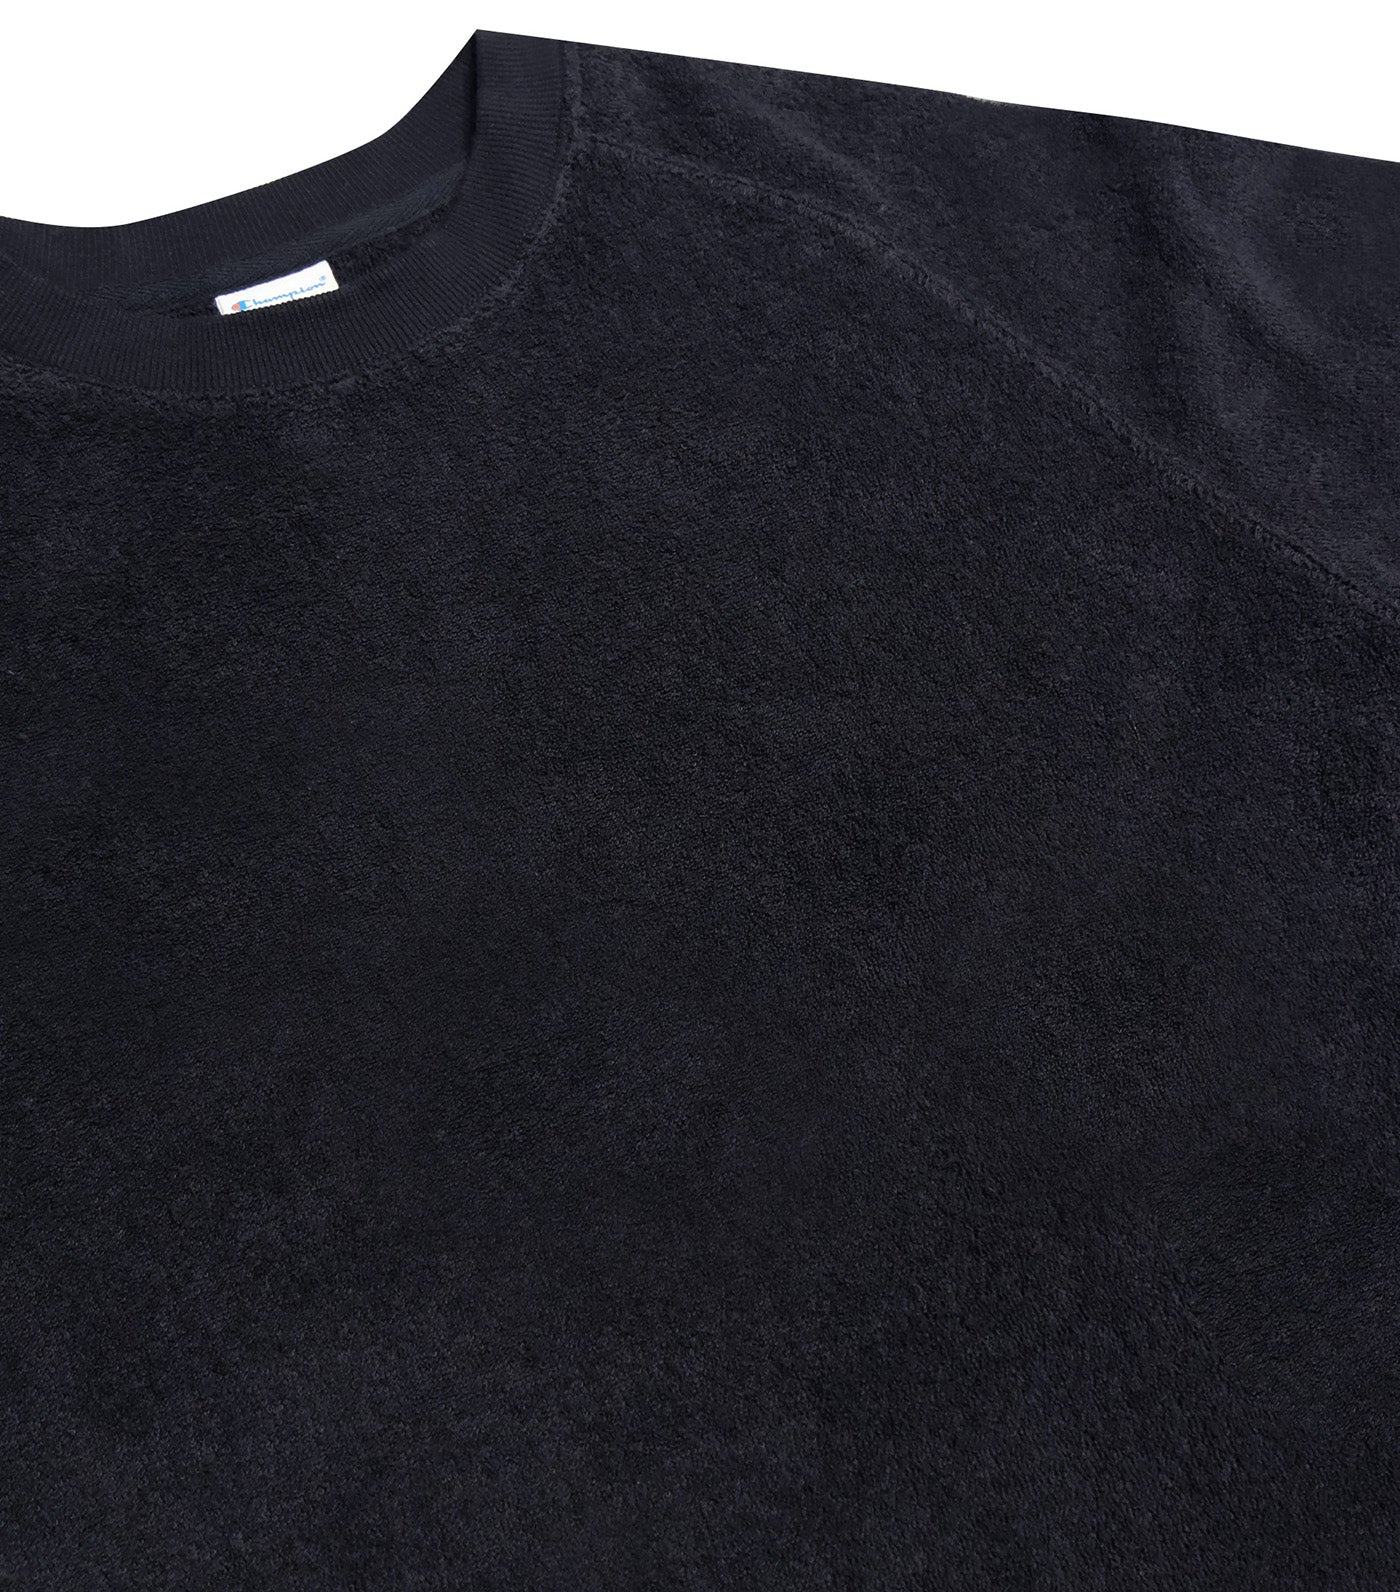 Japan Line Raglan Short Sleeve T-Shirt Black